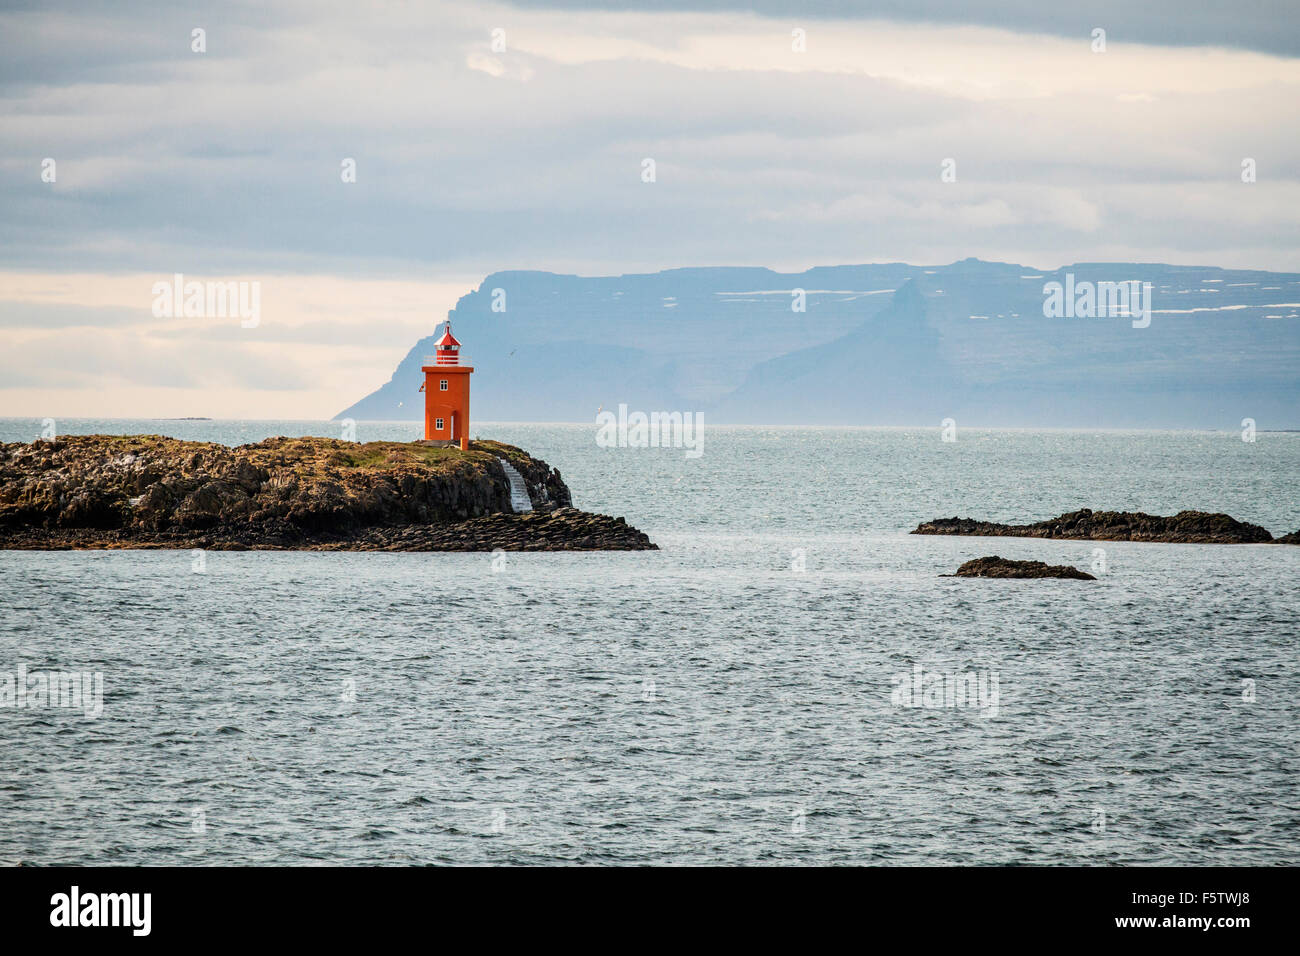 Lighthouse on island, Flatey, Westfjords, Iceland Stock Photo